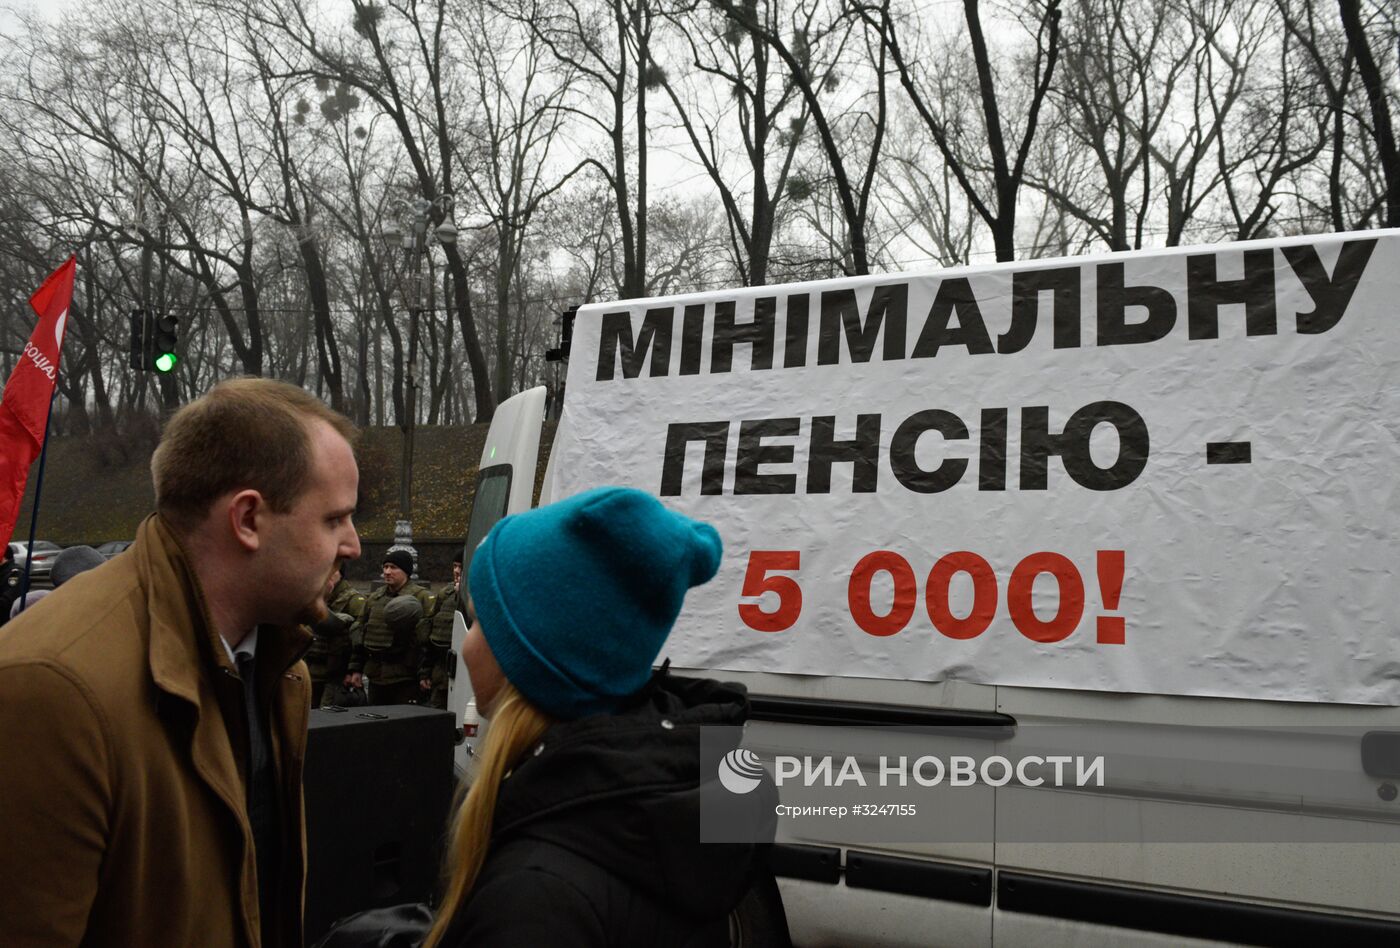 Акция в Киеве с требованием повышения МРОТ и пенсий